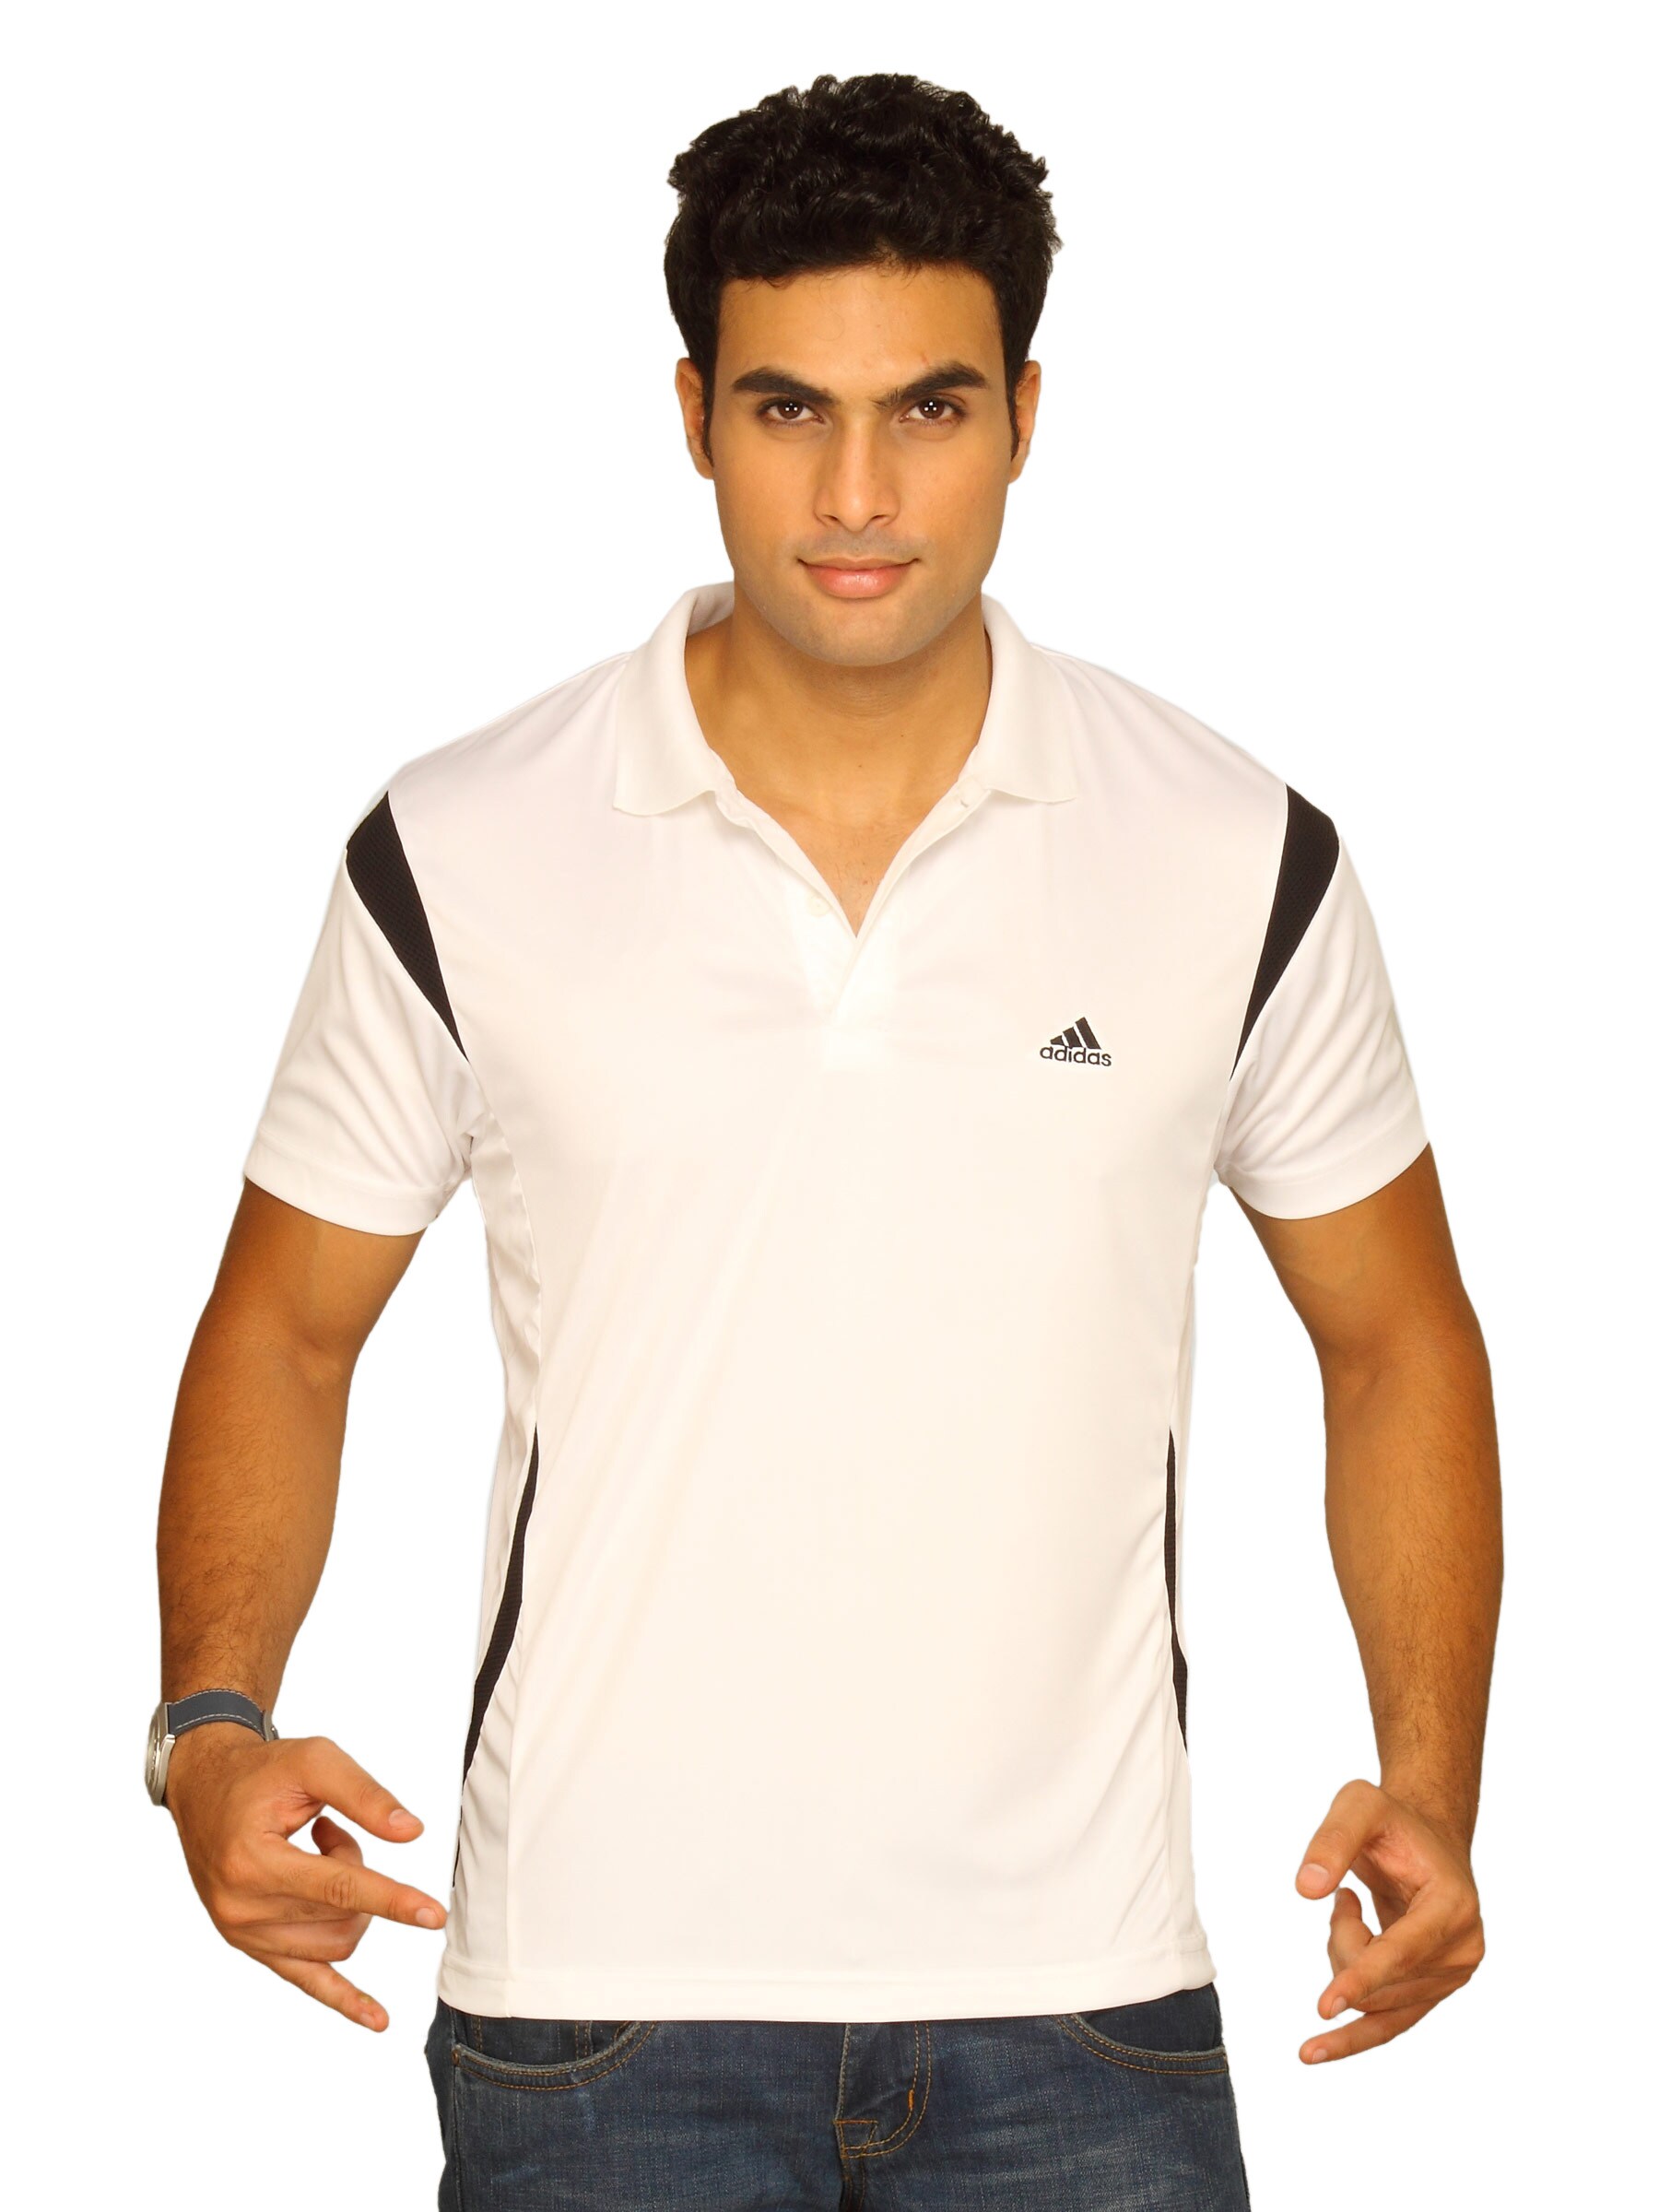 ADIDAS Men's Star Polo White Polo T-shirt